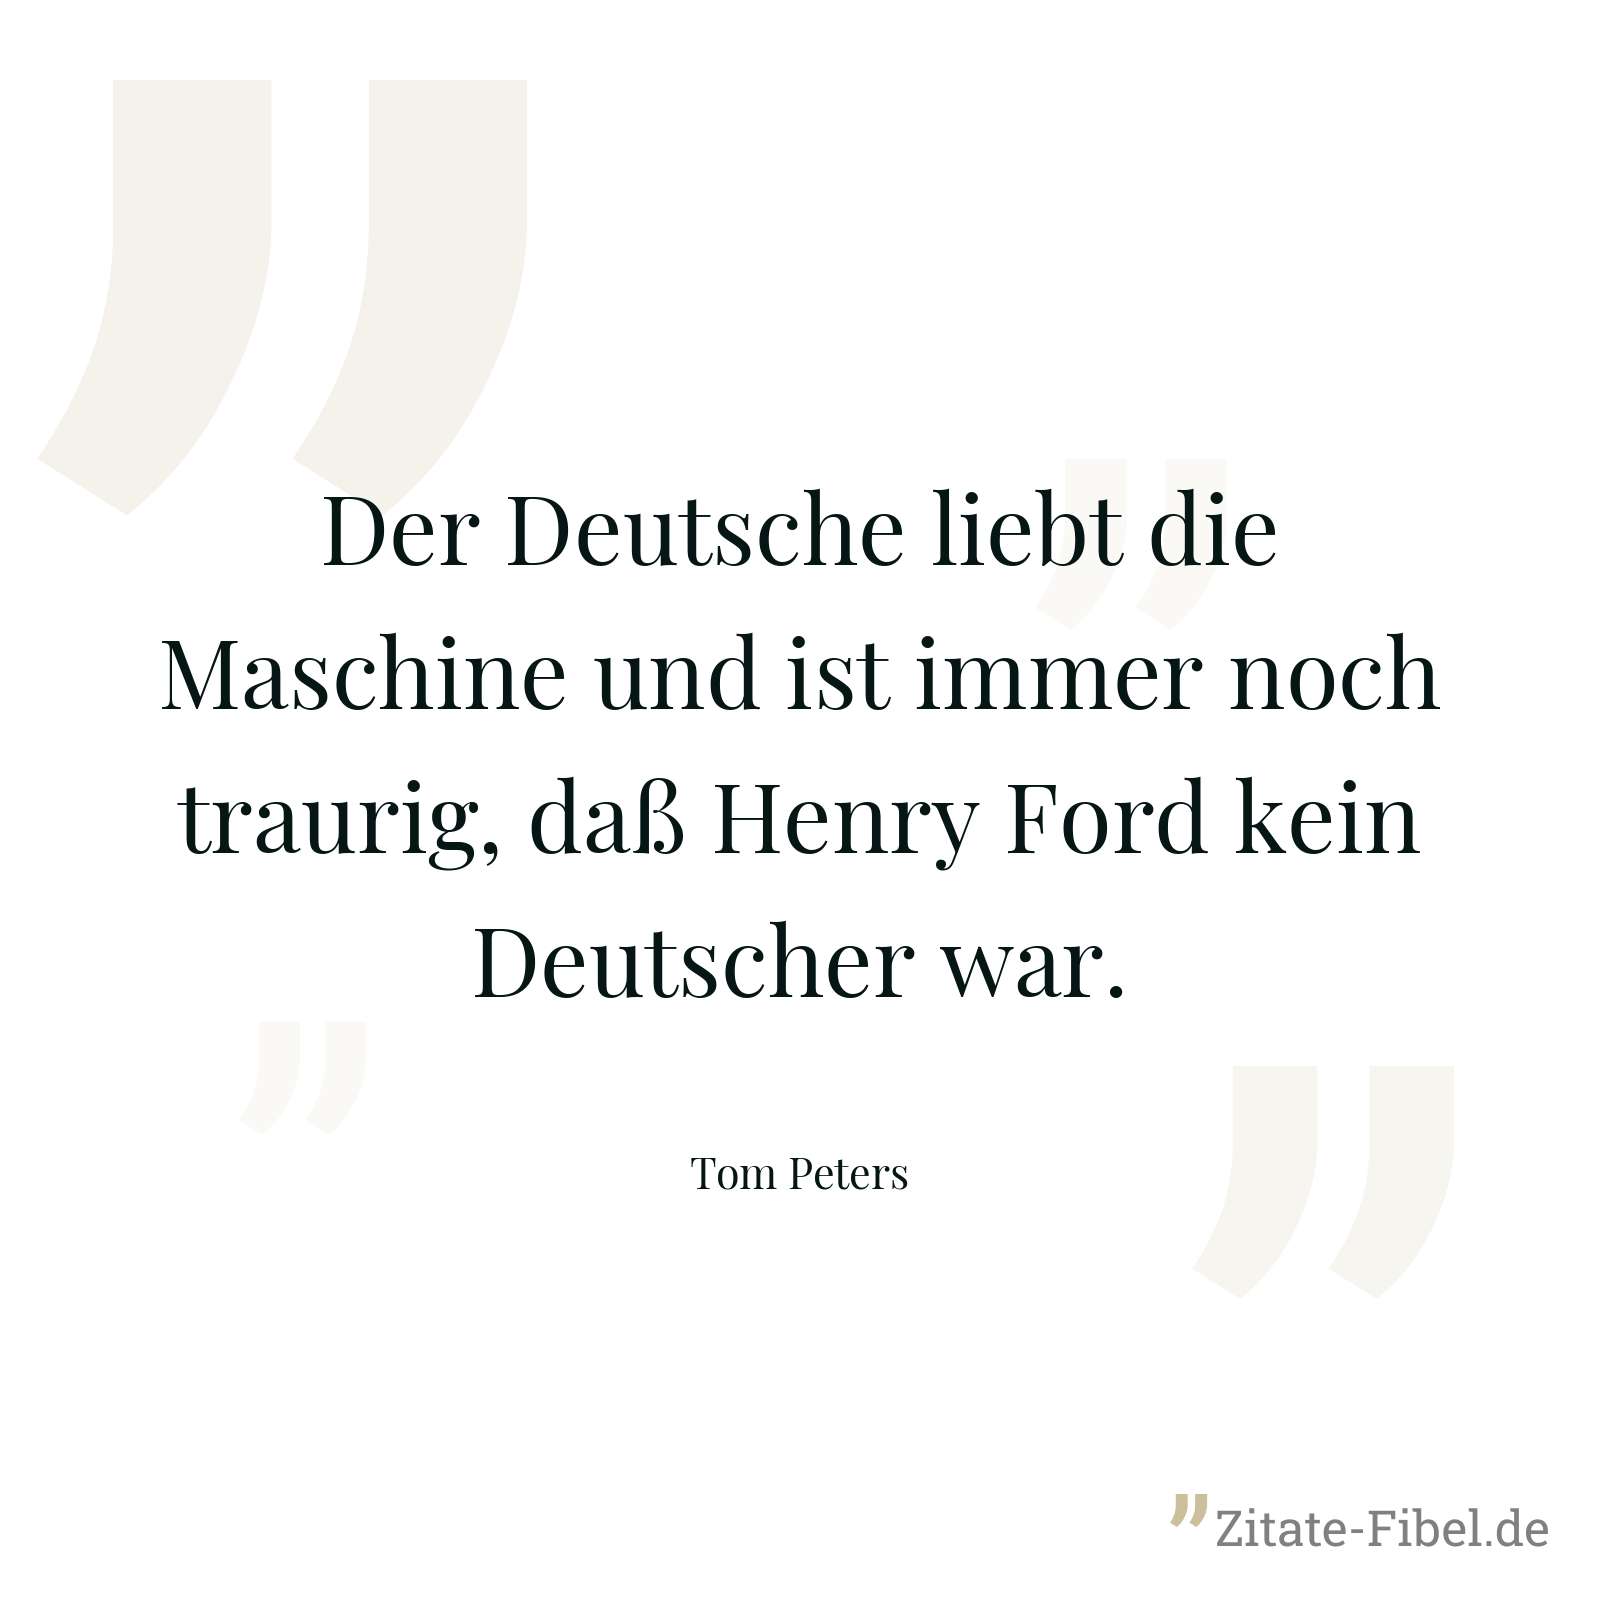 Der Deutsche liebt die Maschine und ist immer noch traurig, daß Henry Ford kein Deutscher war. - Tom Peters